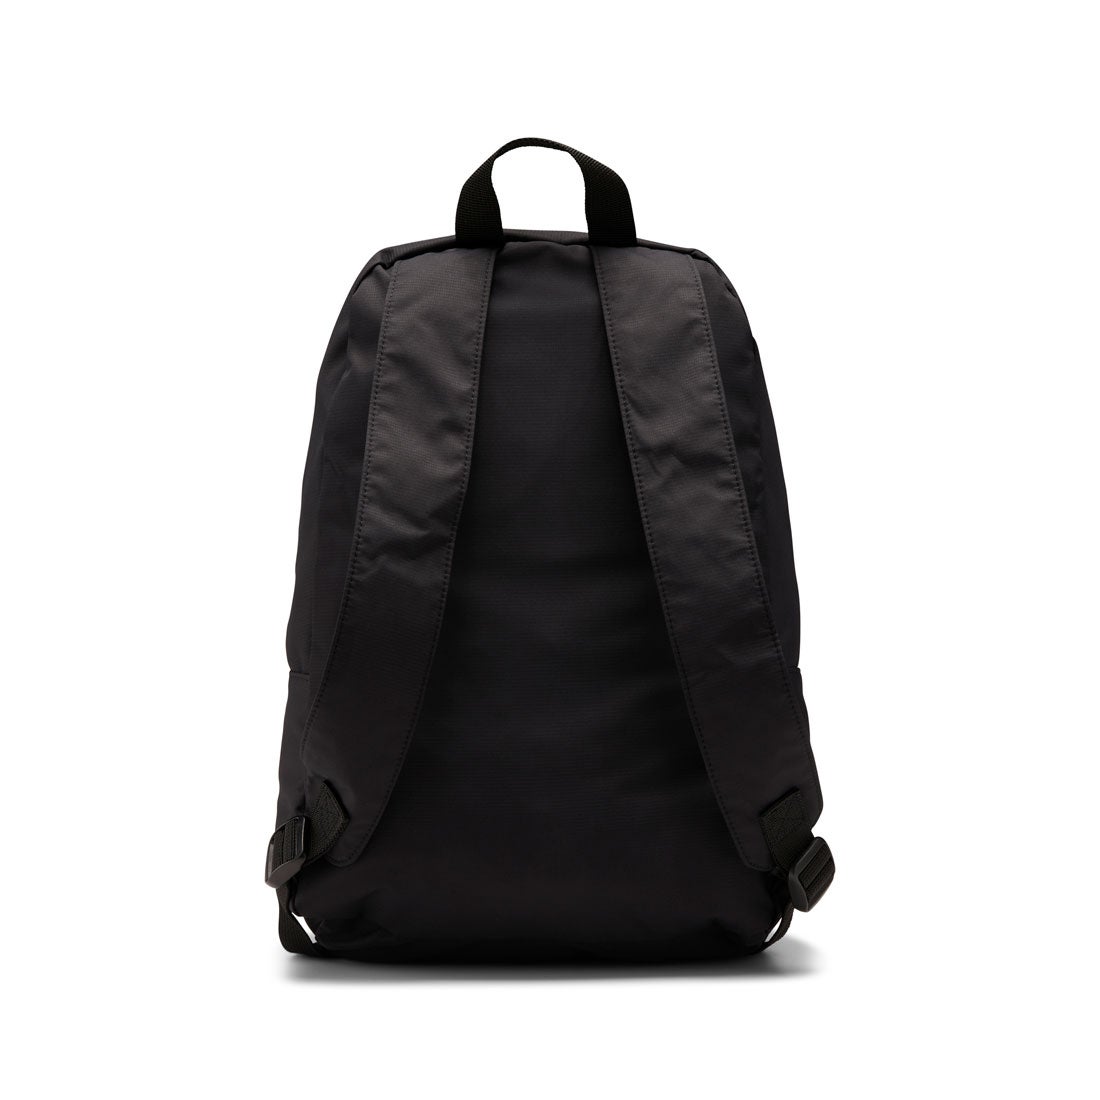 クラシックス プレミアム バックパック / Classics Premium Backpack